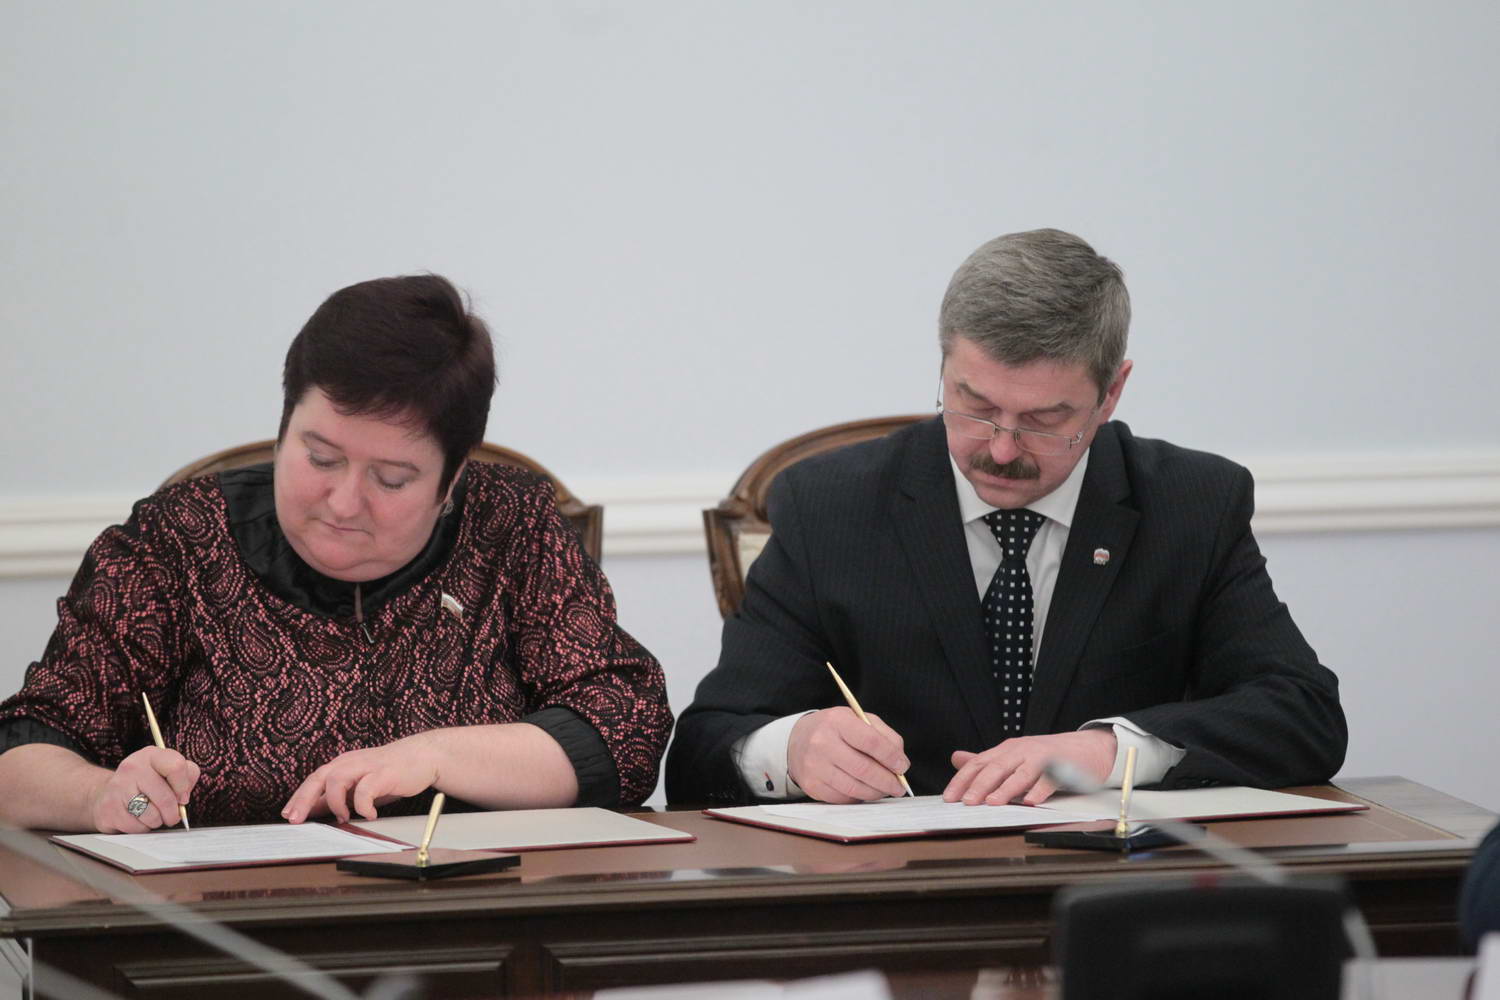 Муниципальные образования Петербурга и Севастополя подписали соглашения о сотрудничестве